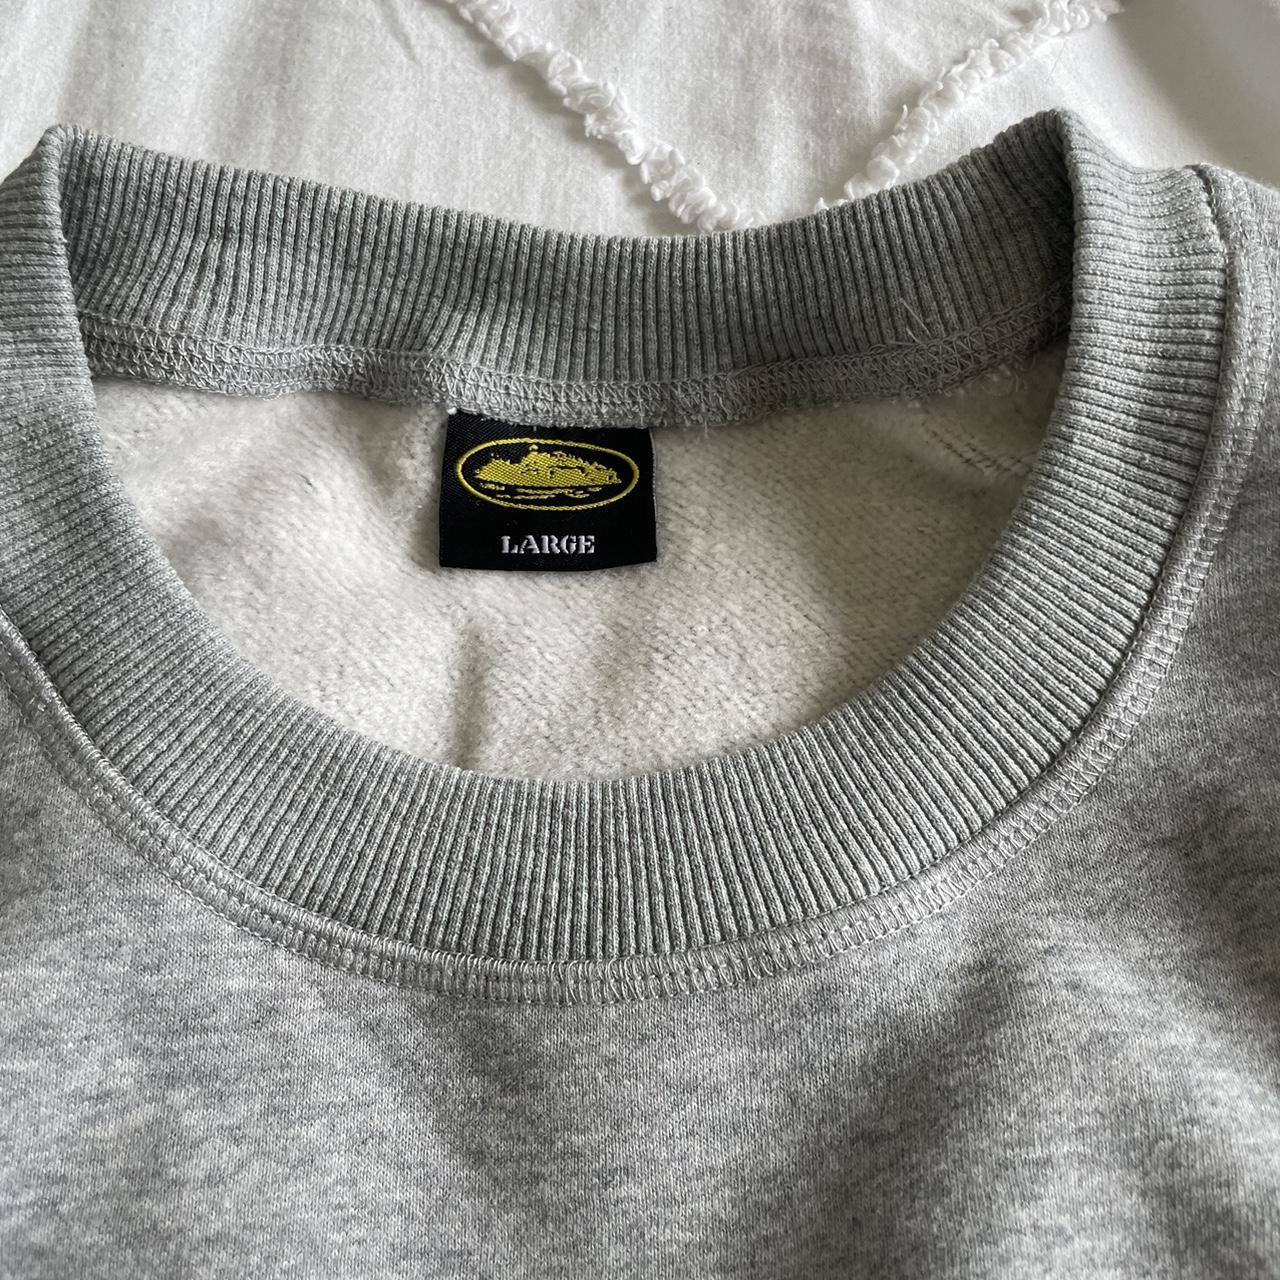 Corteiz Grey crewneck/sweatshirt Authentic ... - Depop